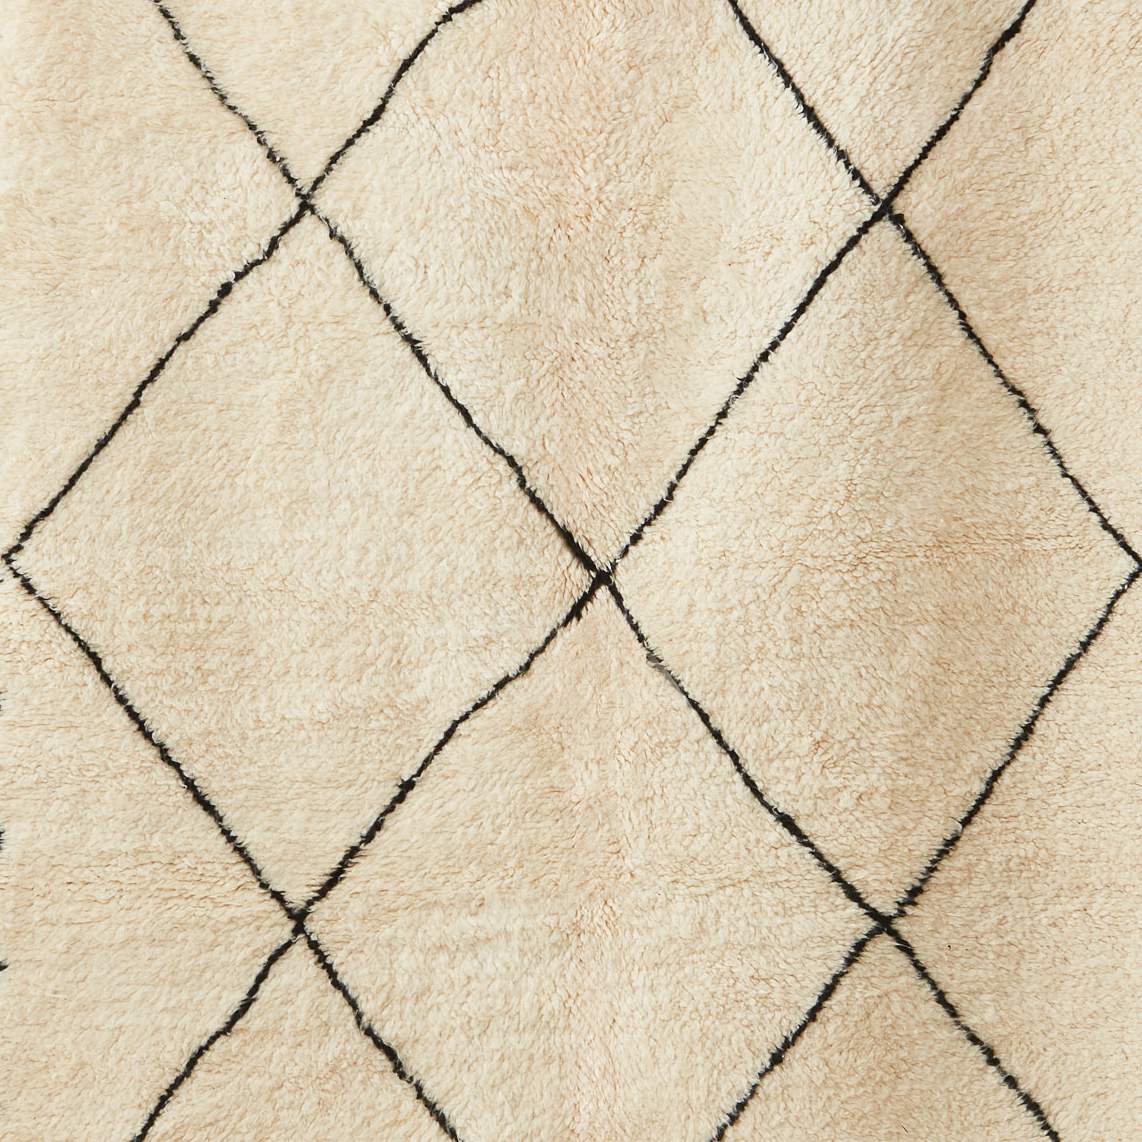 dettaglio del motivo a rombi di un tappeto beni ourain su base in lana bianca